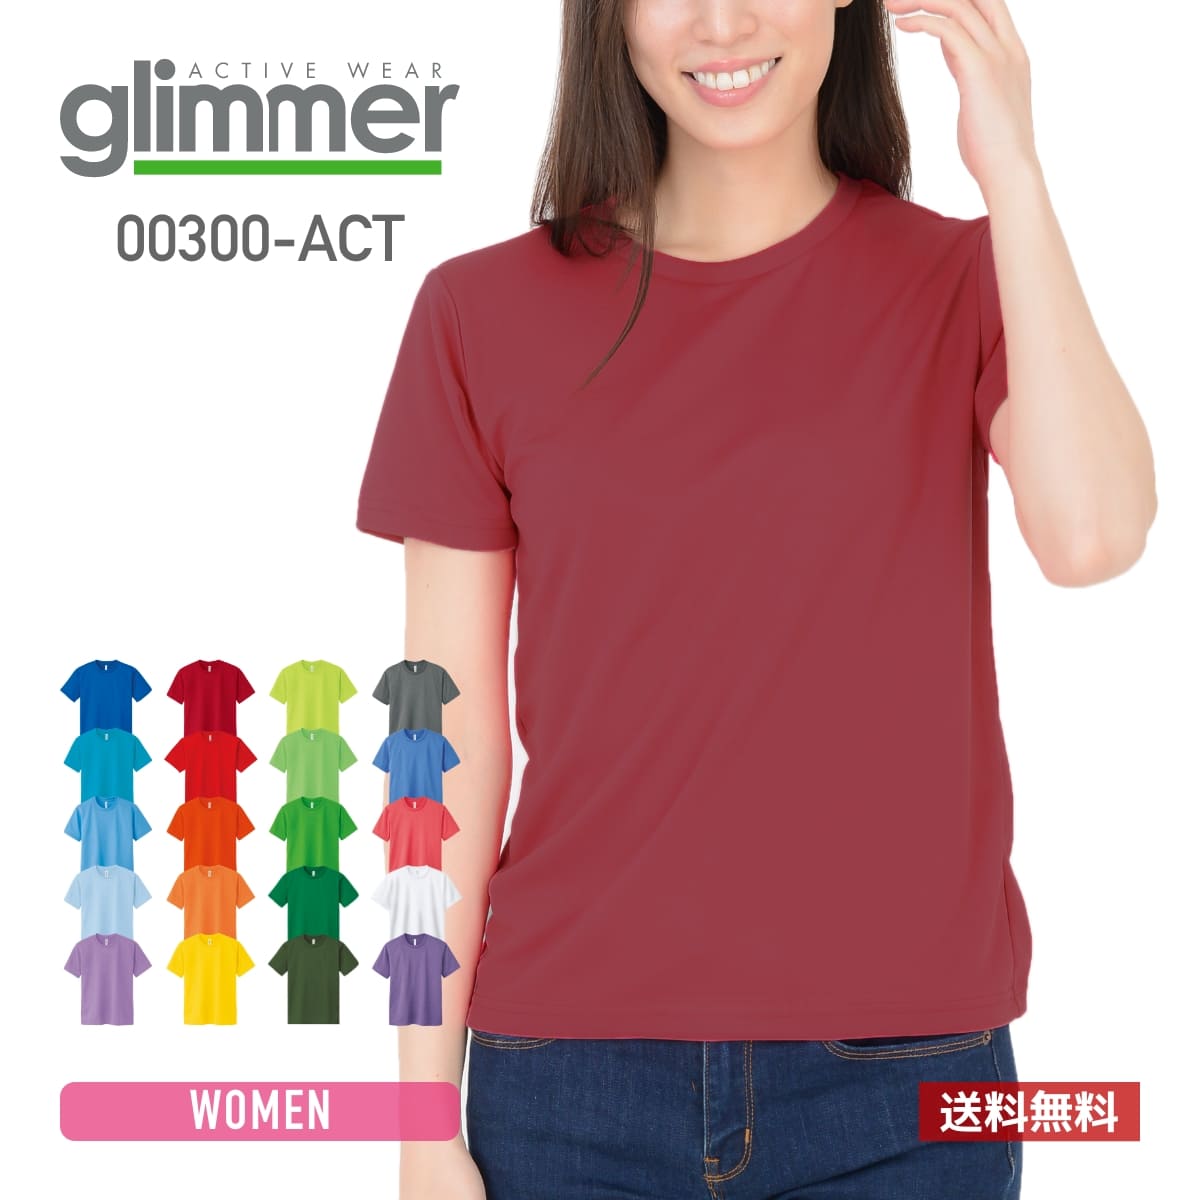 最新作の 速乾 tシャツ レディース glimmer グリマー 4.4オンス ドライ Tシャツ 00300-ACT 300act 送料無料 基本色  女性用 スポーツ 運動会 文化祭 ユニフォーム